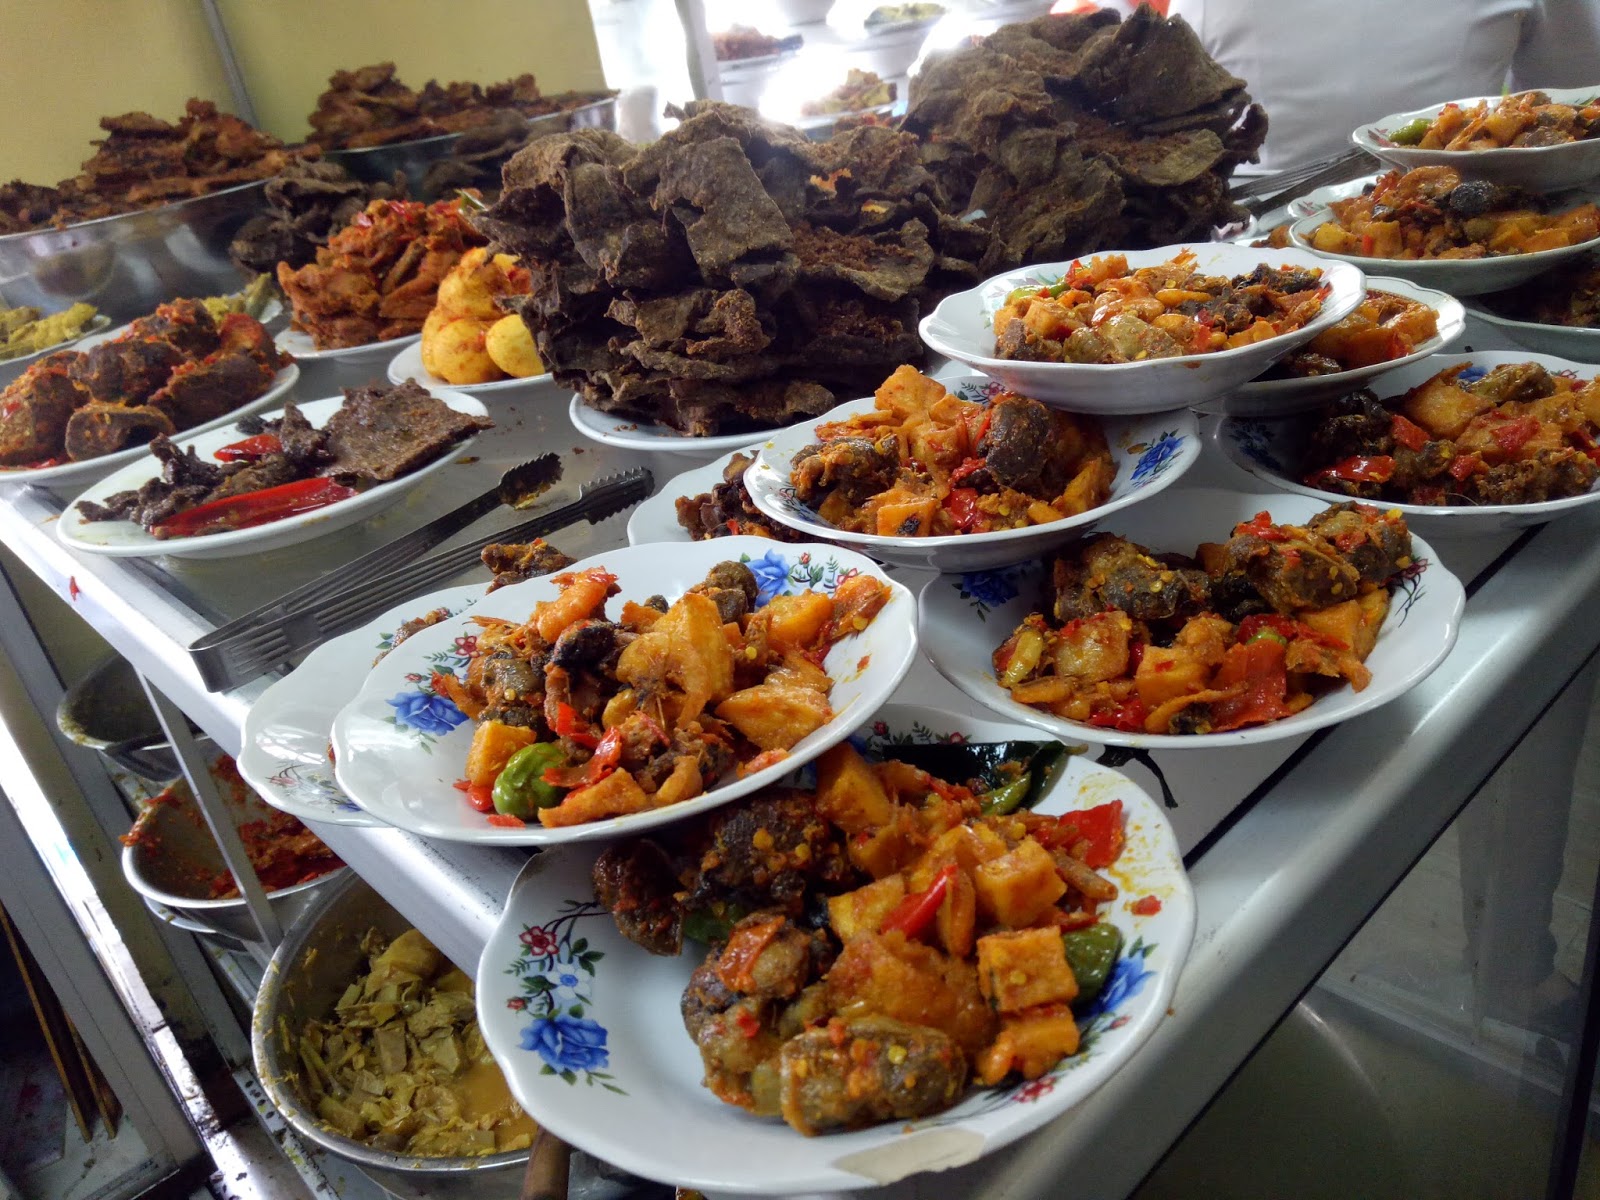 Jual Masakan Padang Enak Di Magetan Traveler Modis 5 Rumah Makan Padang Enak Ekonomis Di Jakarta Berikut Tempat Makan Nasi Padang Enak Di Jogja Yang Lumayan Recommended